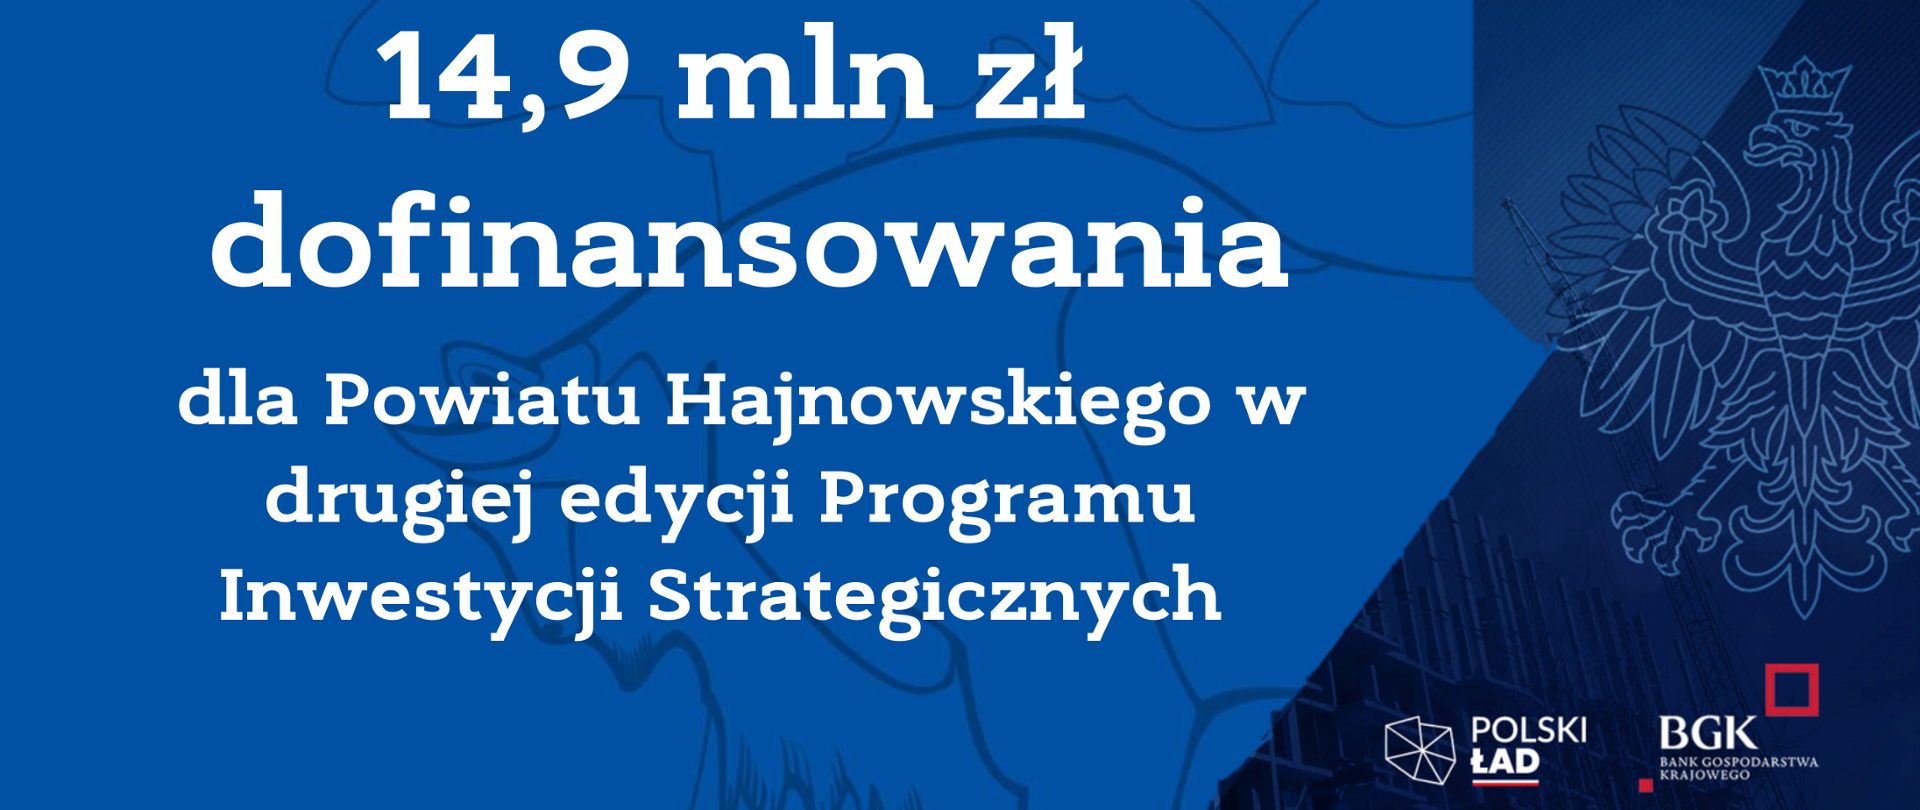 14,9 mln zł dofinansowania dla Powiatu Hajnowskiego w drugiej edycji Programu Inwestycji Strategicznych